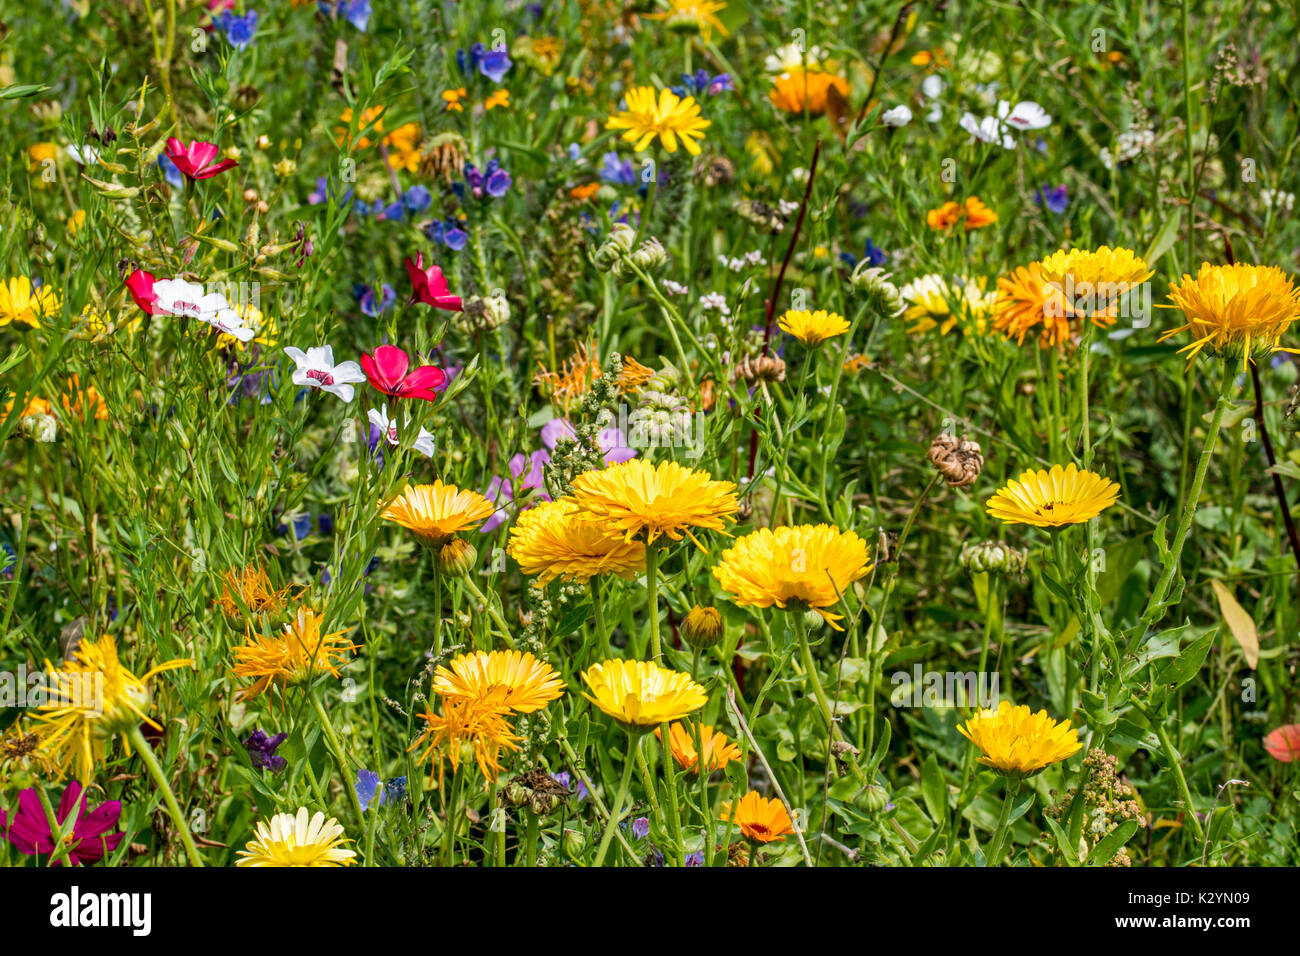 Mischung aus bunten Wildblumen in Wildflower zone Grünland angrenzen, gepflanzt zu gewinnen und helfen Bienen, Schmetterlinge und andere Bestäuber Stockfoto